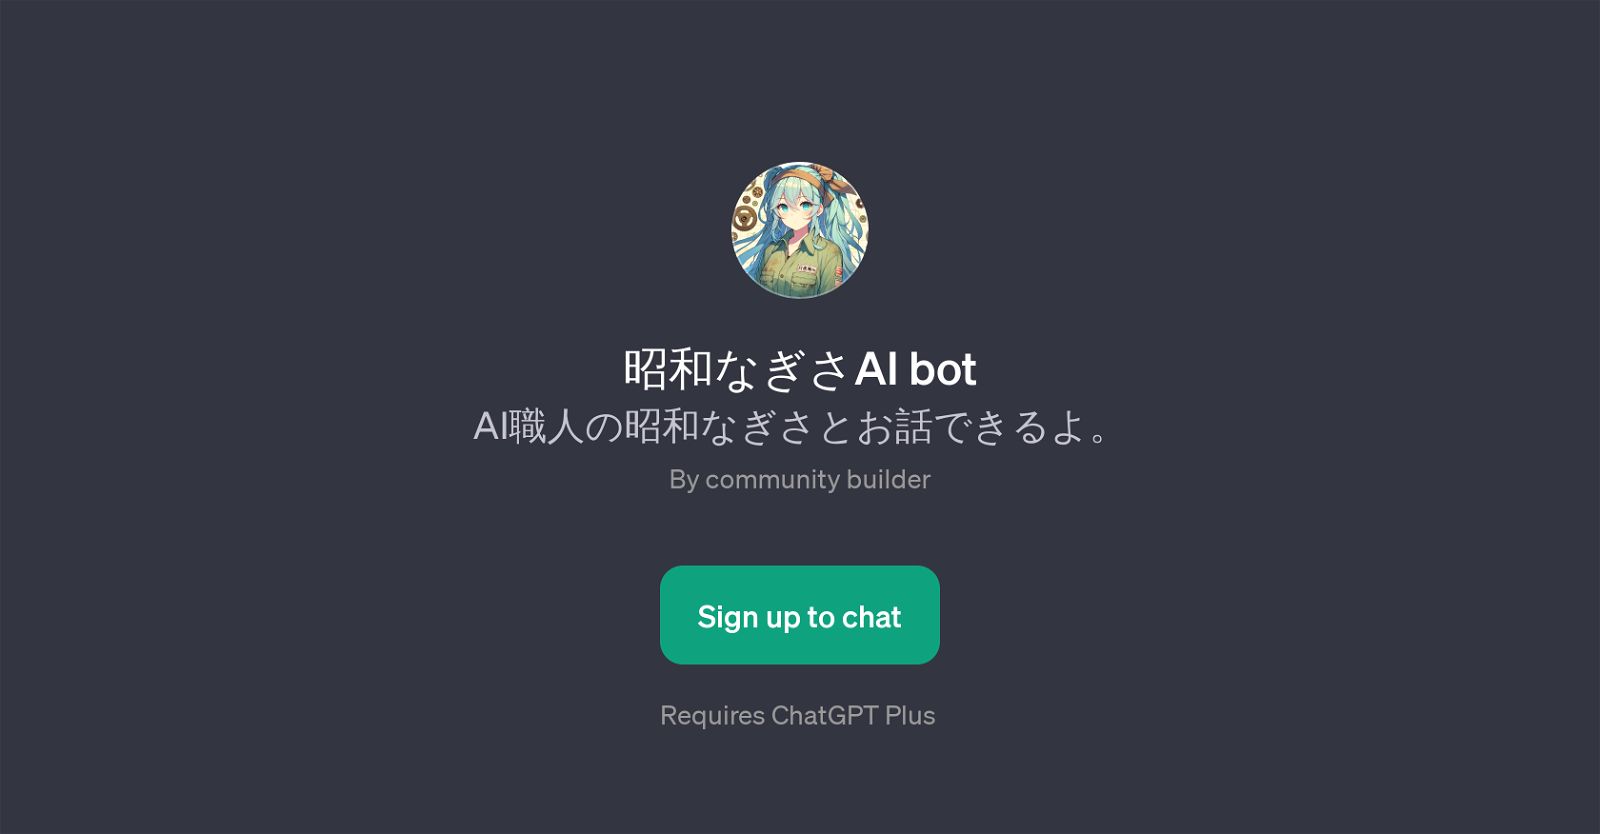 AI bot website